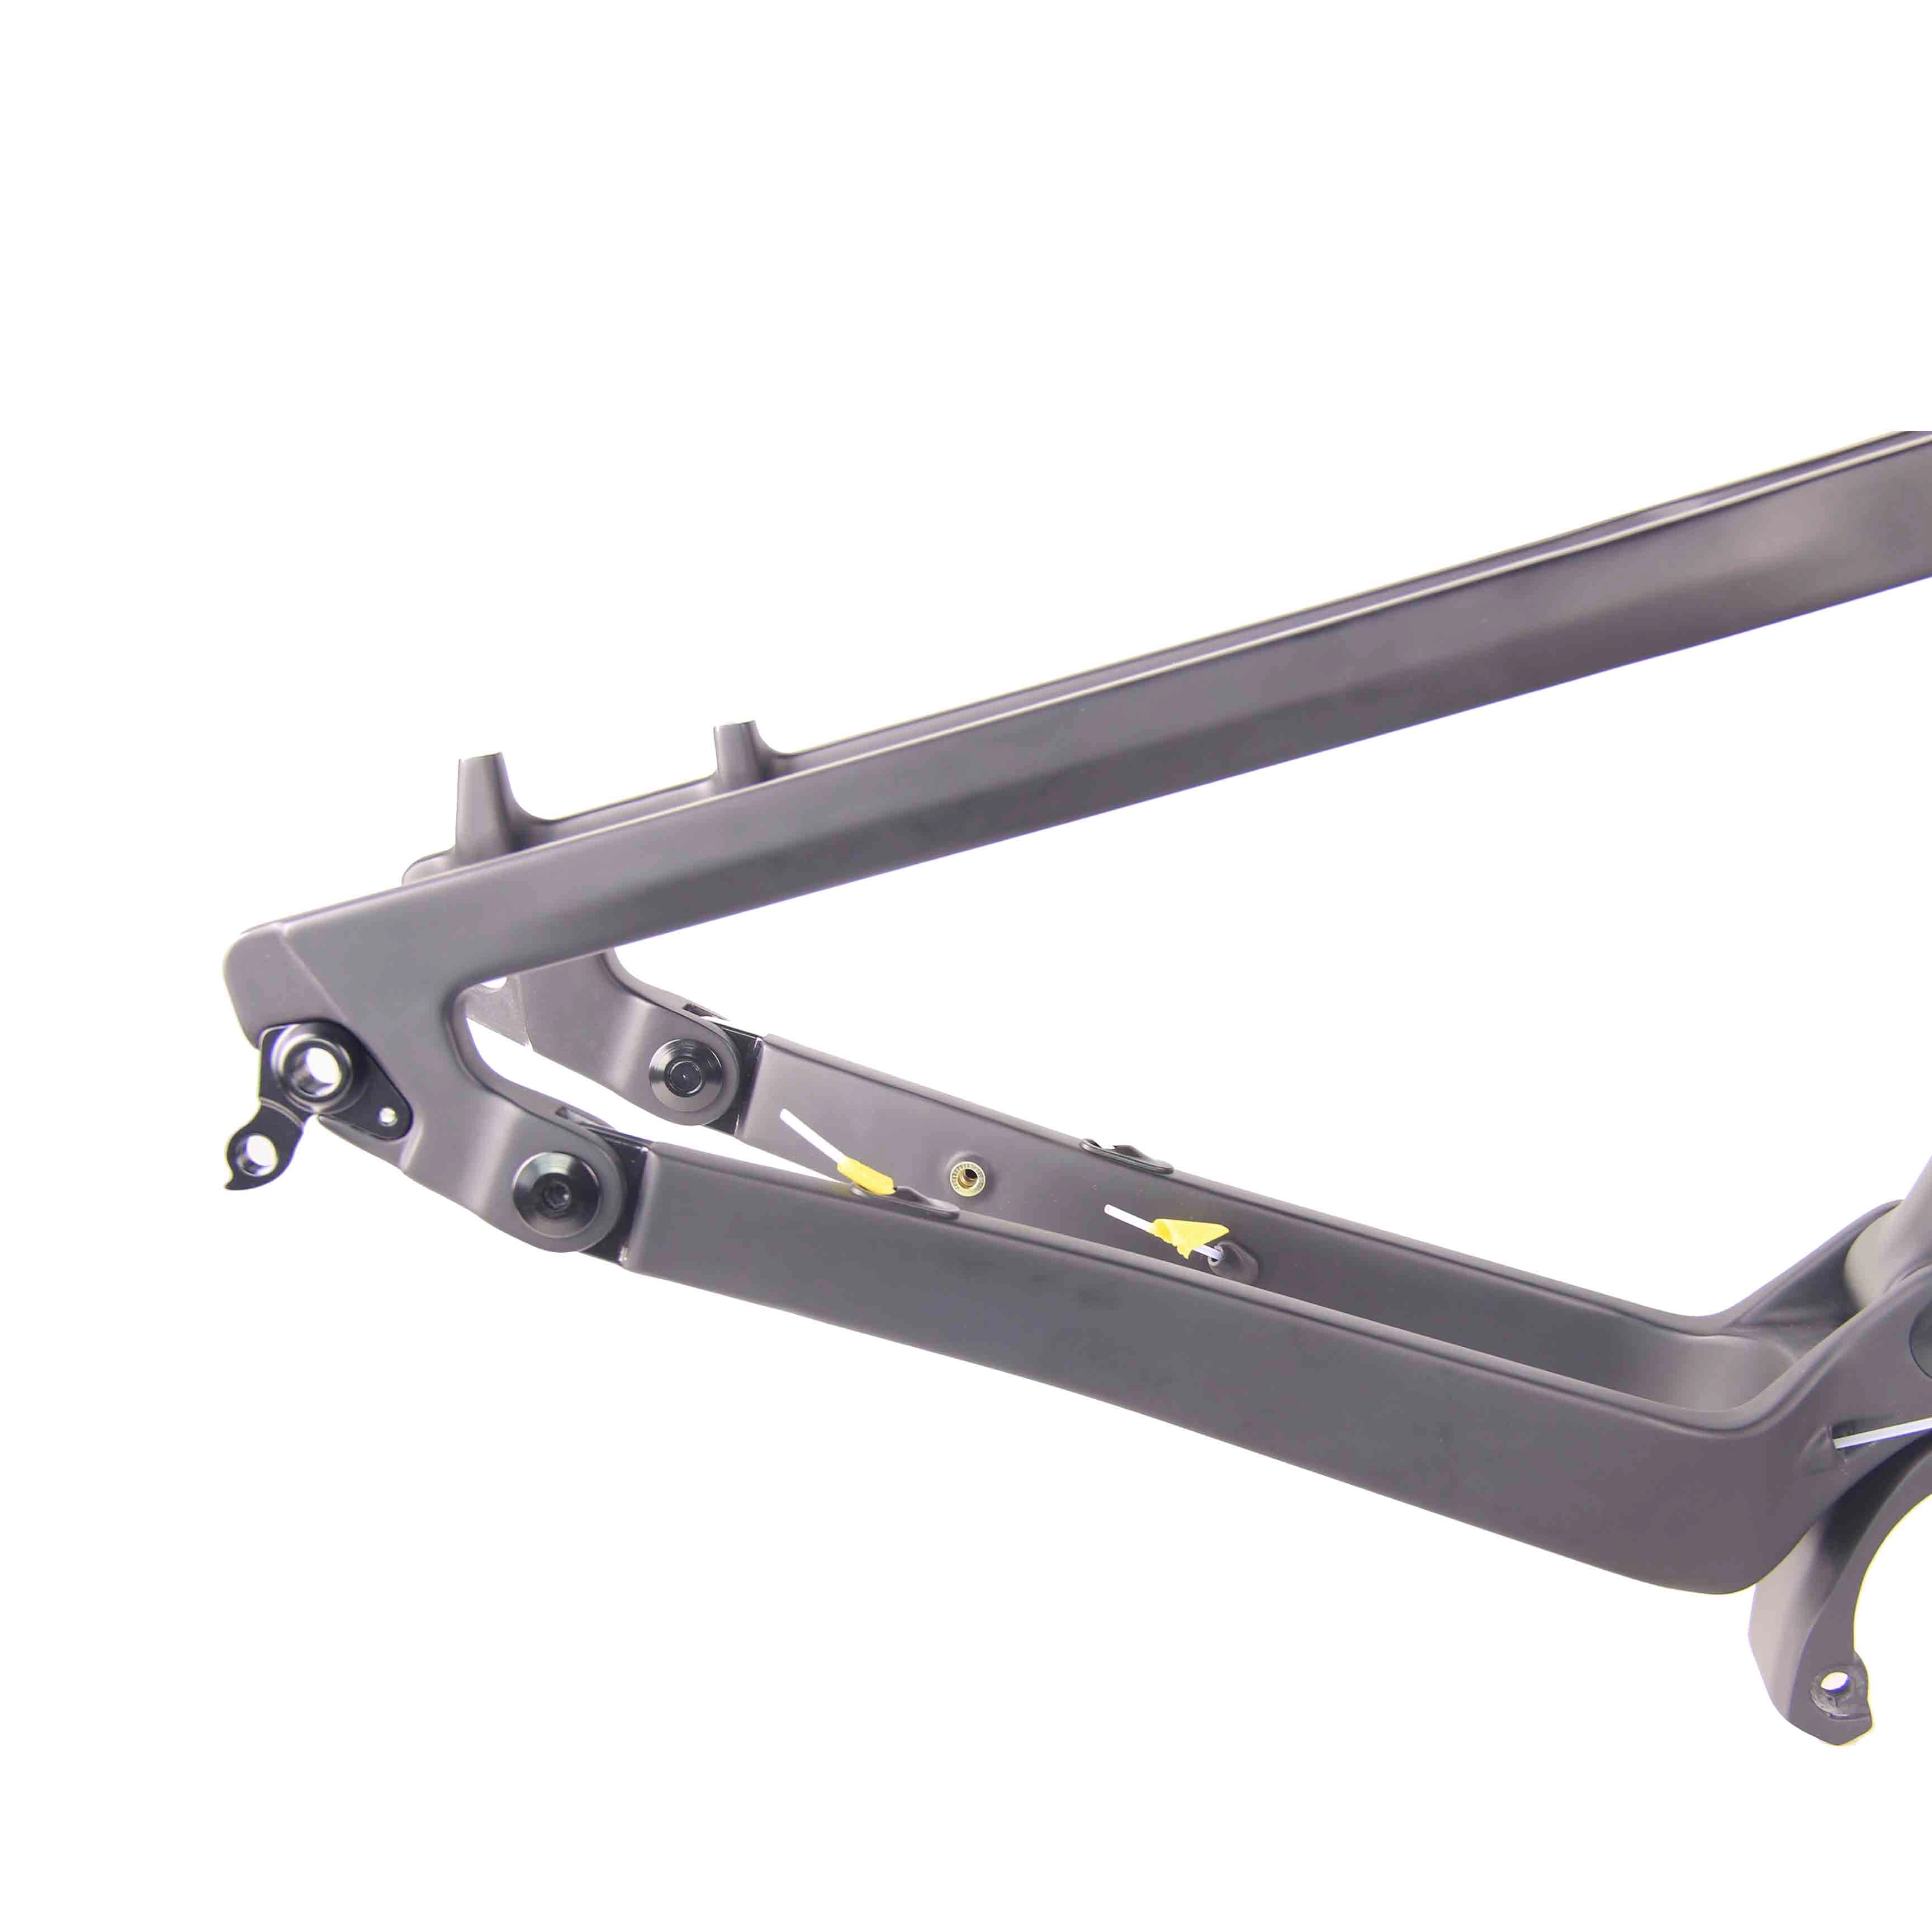 New LightCarbon Enduro Full Suspension Ebike frameset designing for Bafang motor